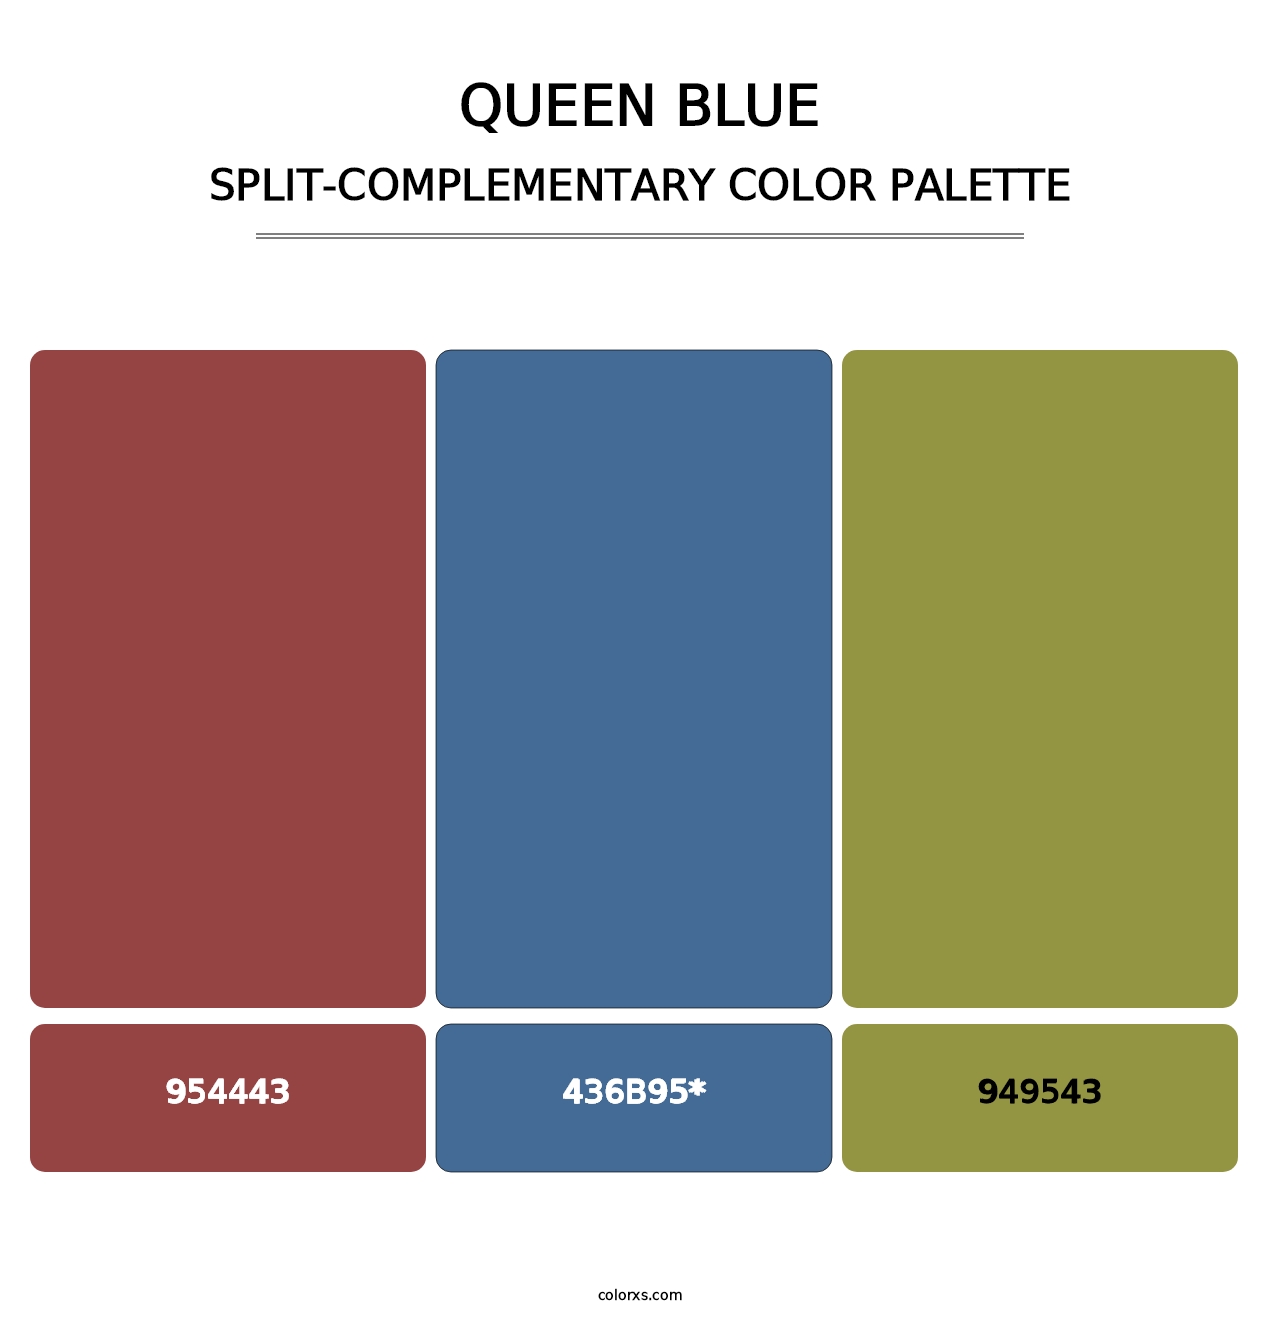 Queen Blue - Split-Complementary Color Palette